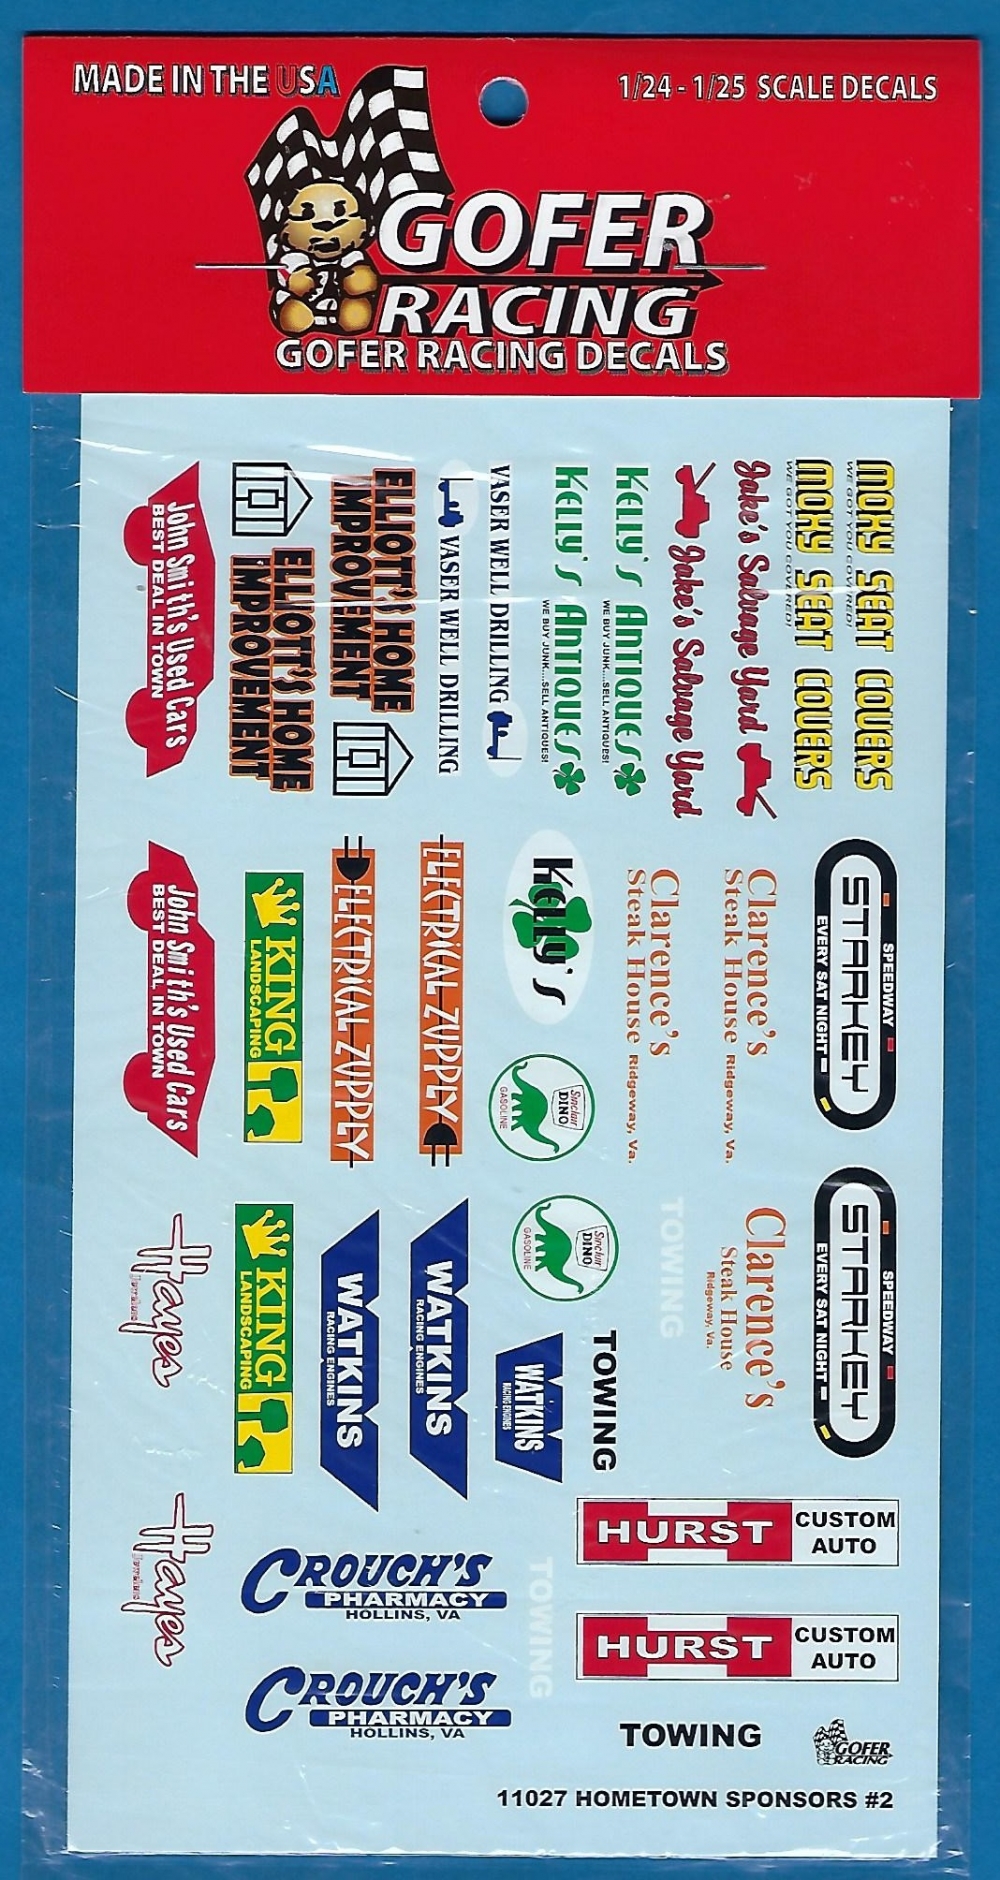 Gofer Racing Decals 1 24-1 25 Hometown Sponsor Logos Decal Sheet 11027 Gof11027 for sale online